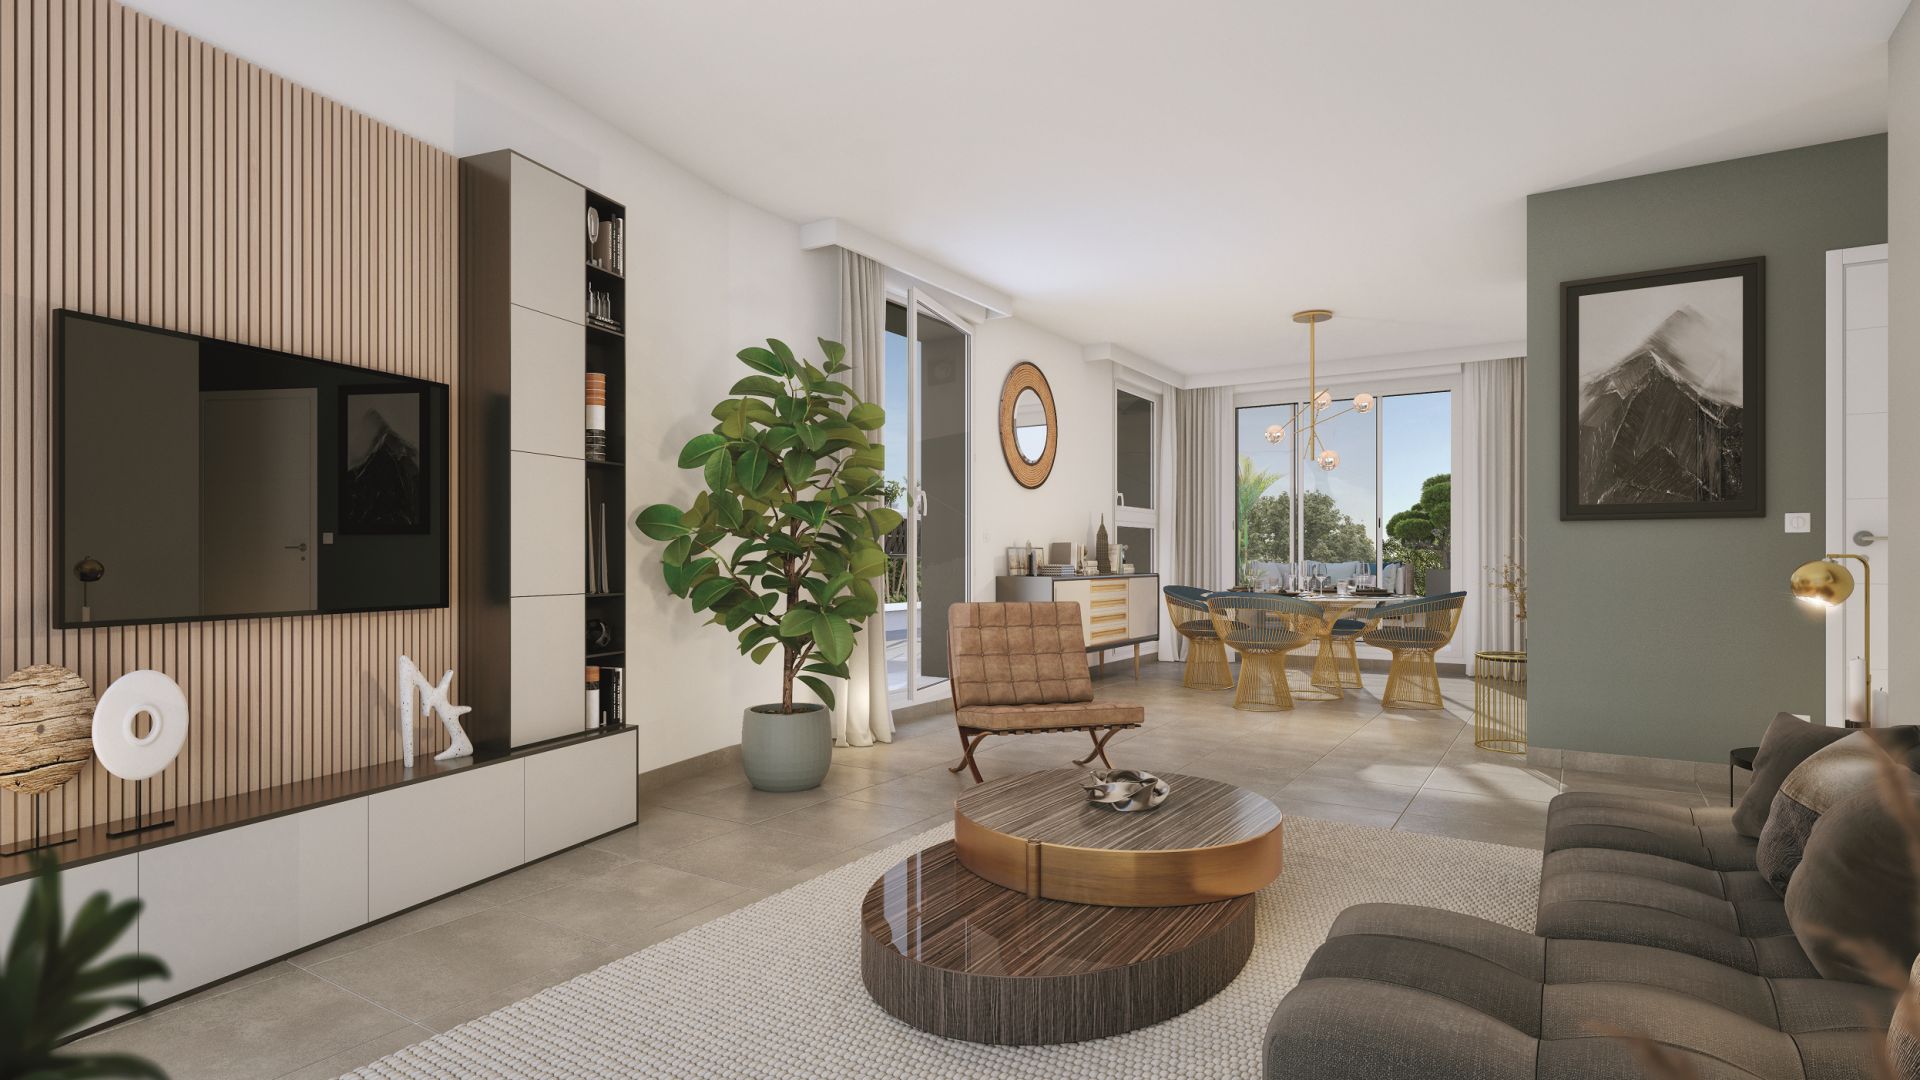 Greencity immobilier - achat appartements neufs du T2 au T4 - Résidence Le City View - 73000 Chambéry   - vue intérieure